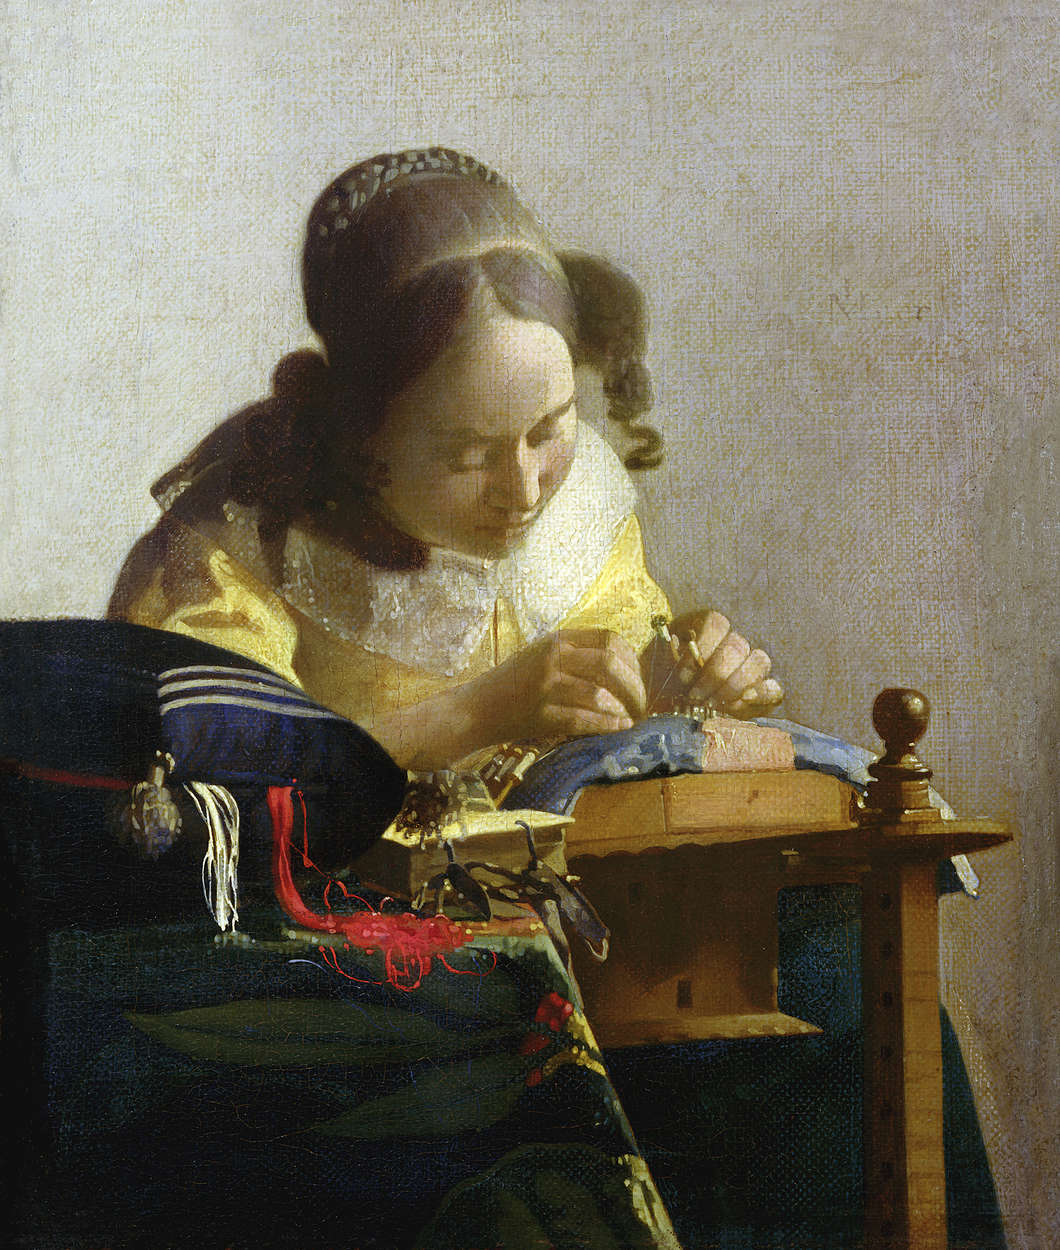             De kantwerksters" muurschildering van Jan Vermeer
        